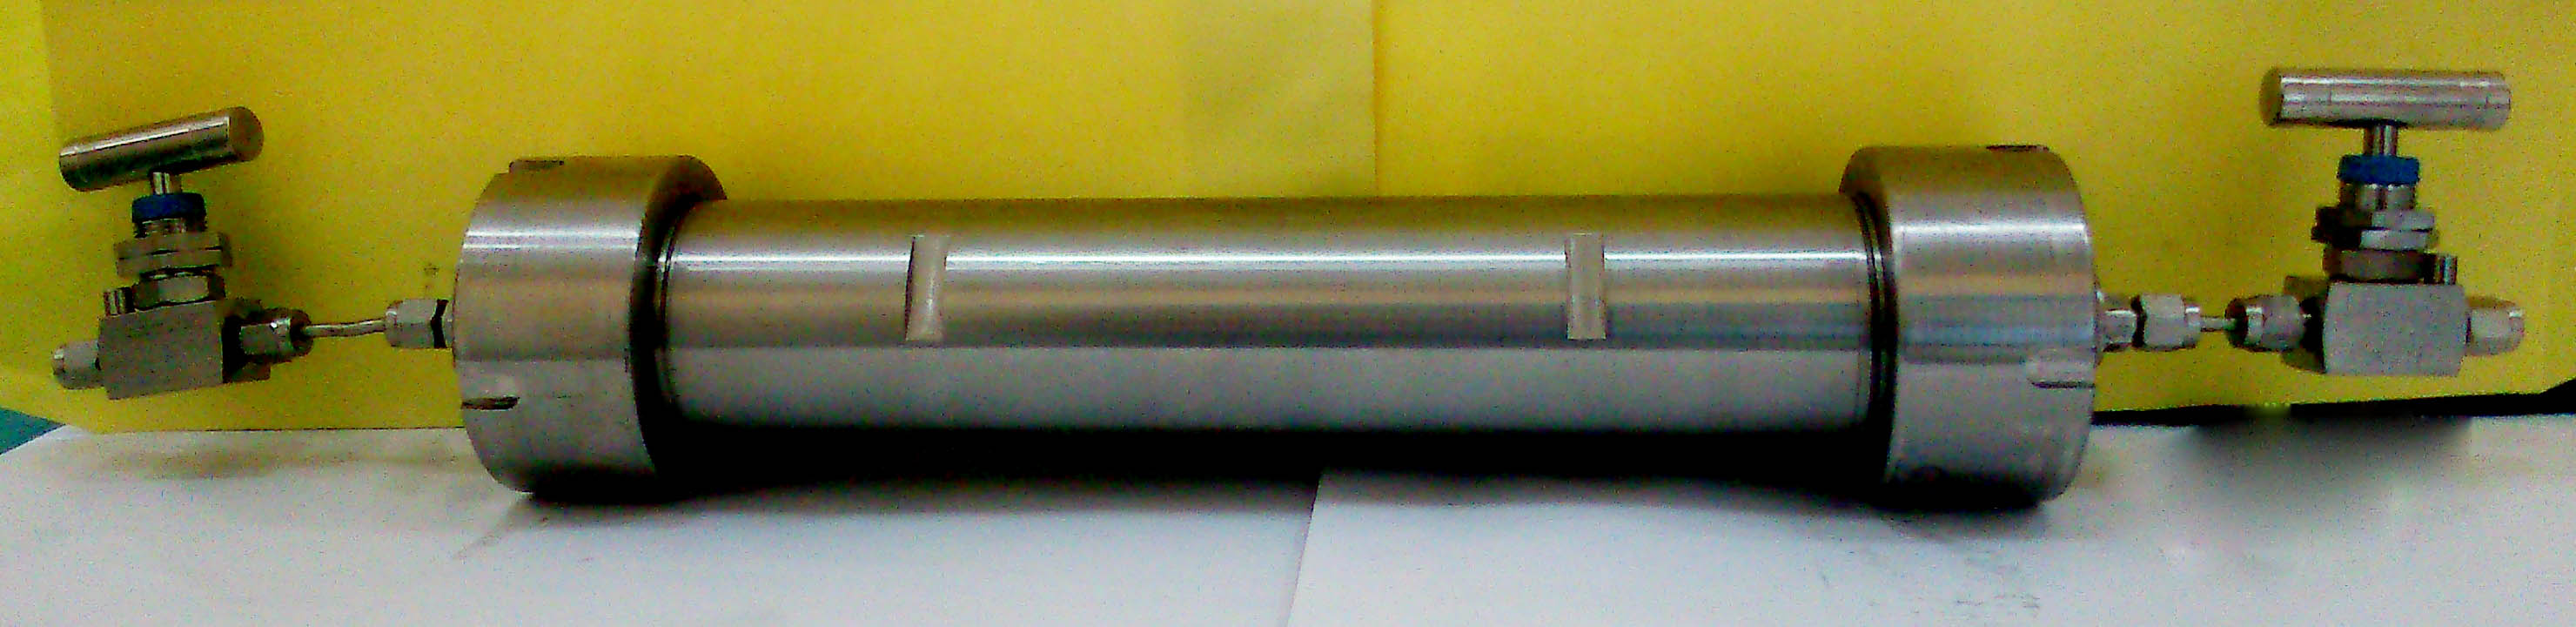 سیلندر نمونه گیری گاز 250 سی سی دارای پوشش داخلی تفلونی